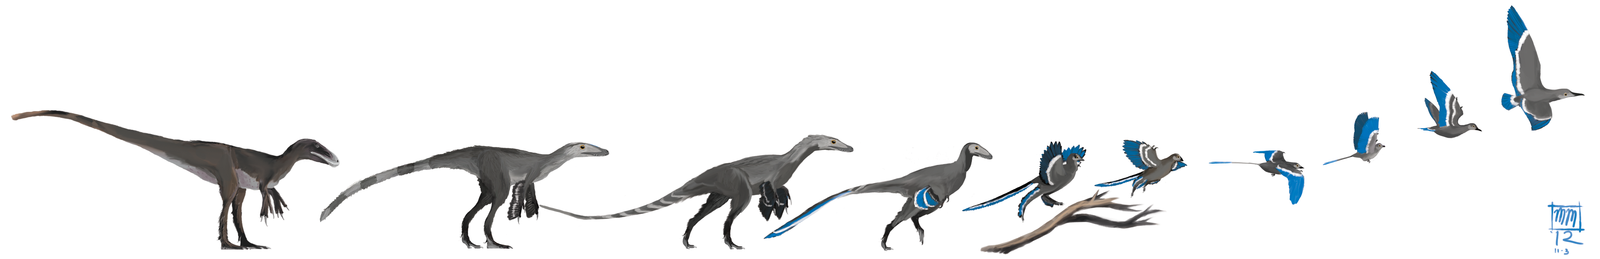 Эволюция динозавров